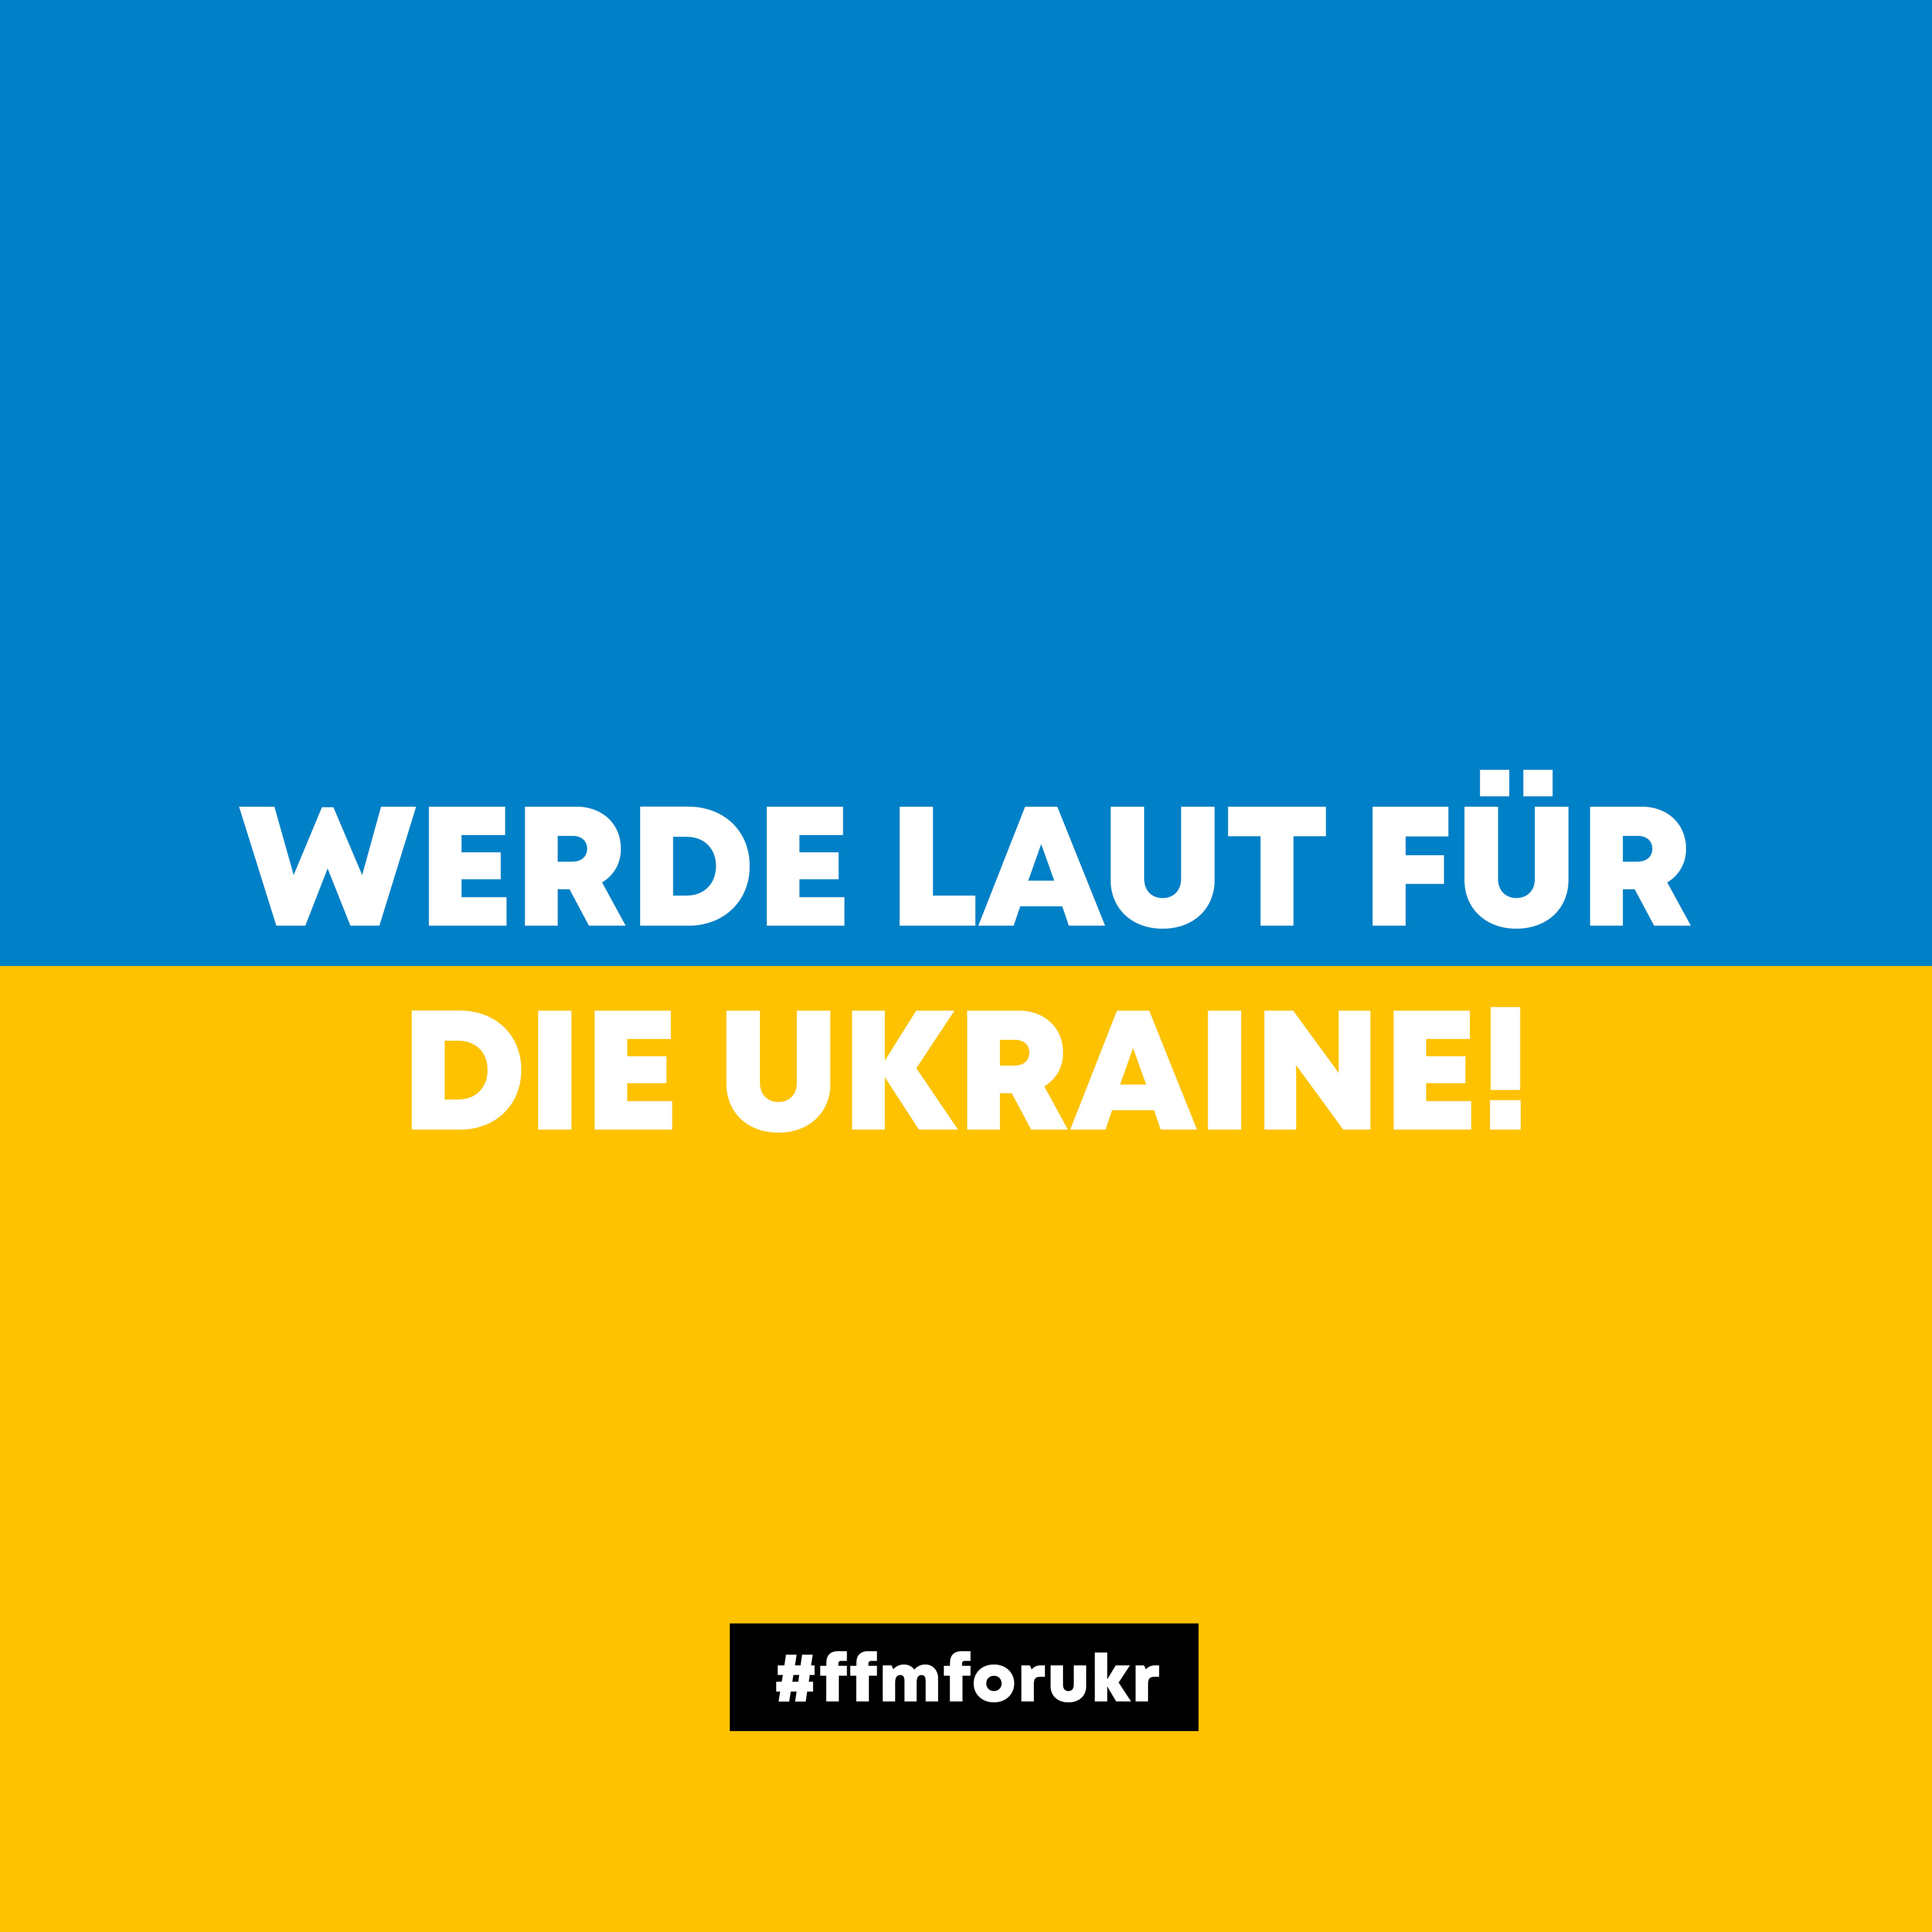 FFM FOR UKR